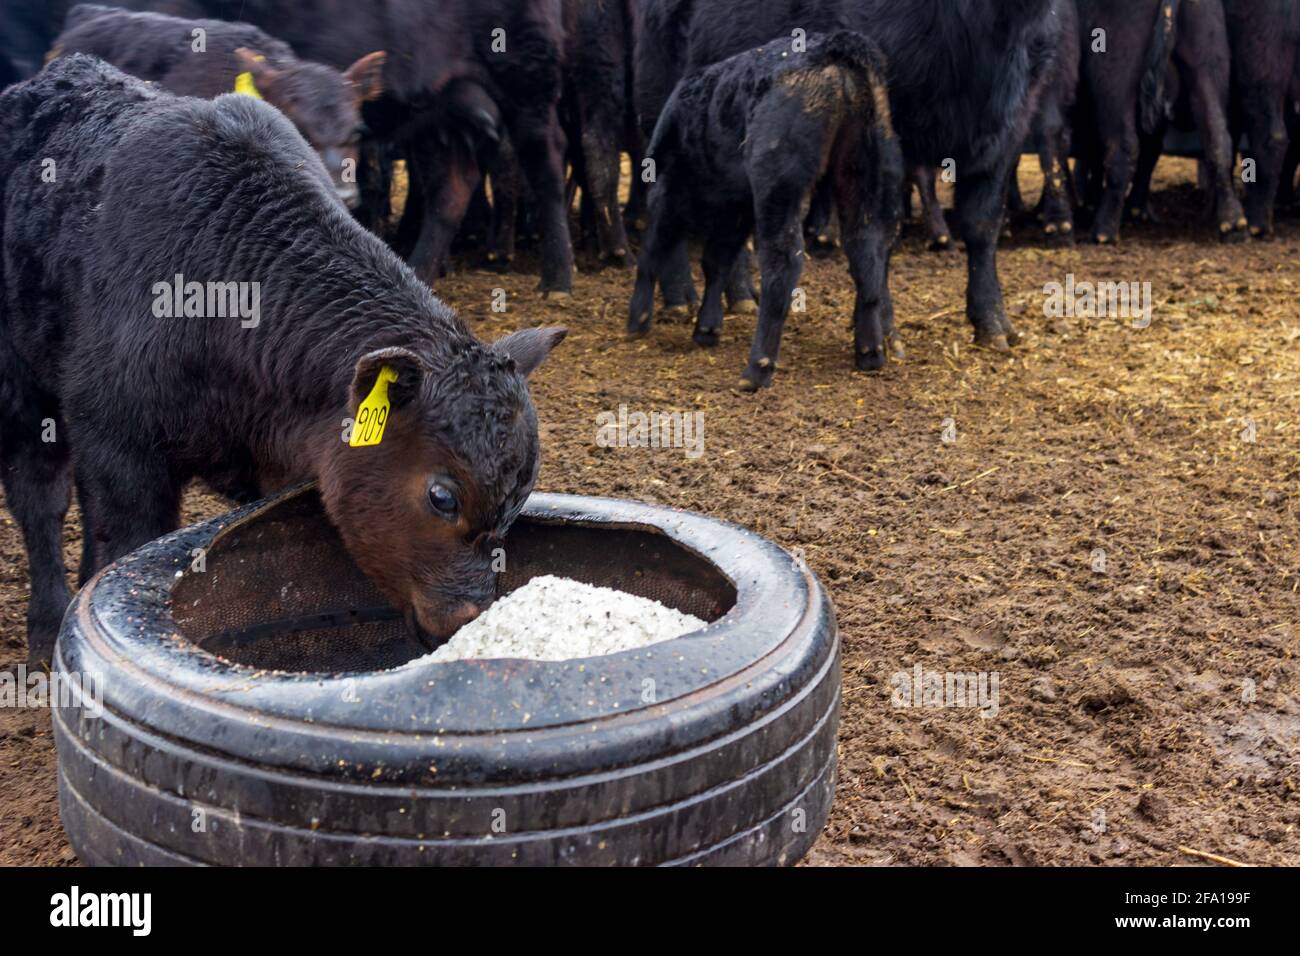 Un veau Black Angus vérifie la boîte de sel fraîchement remplie d'un vieux pneu de tracteur, tandis que les vaches mangent du grain en arrière-plan. Banque D'Images